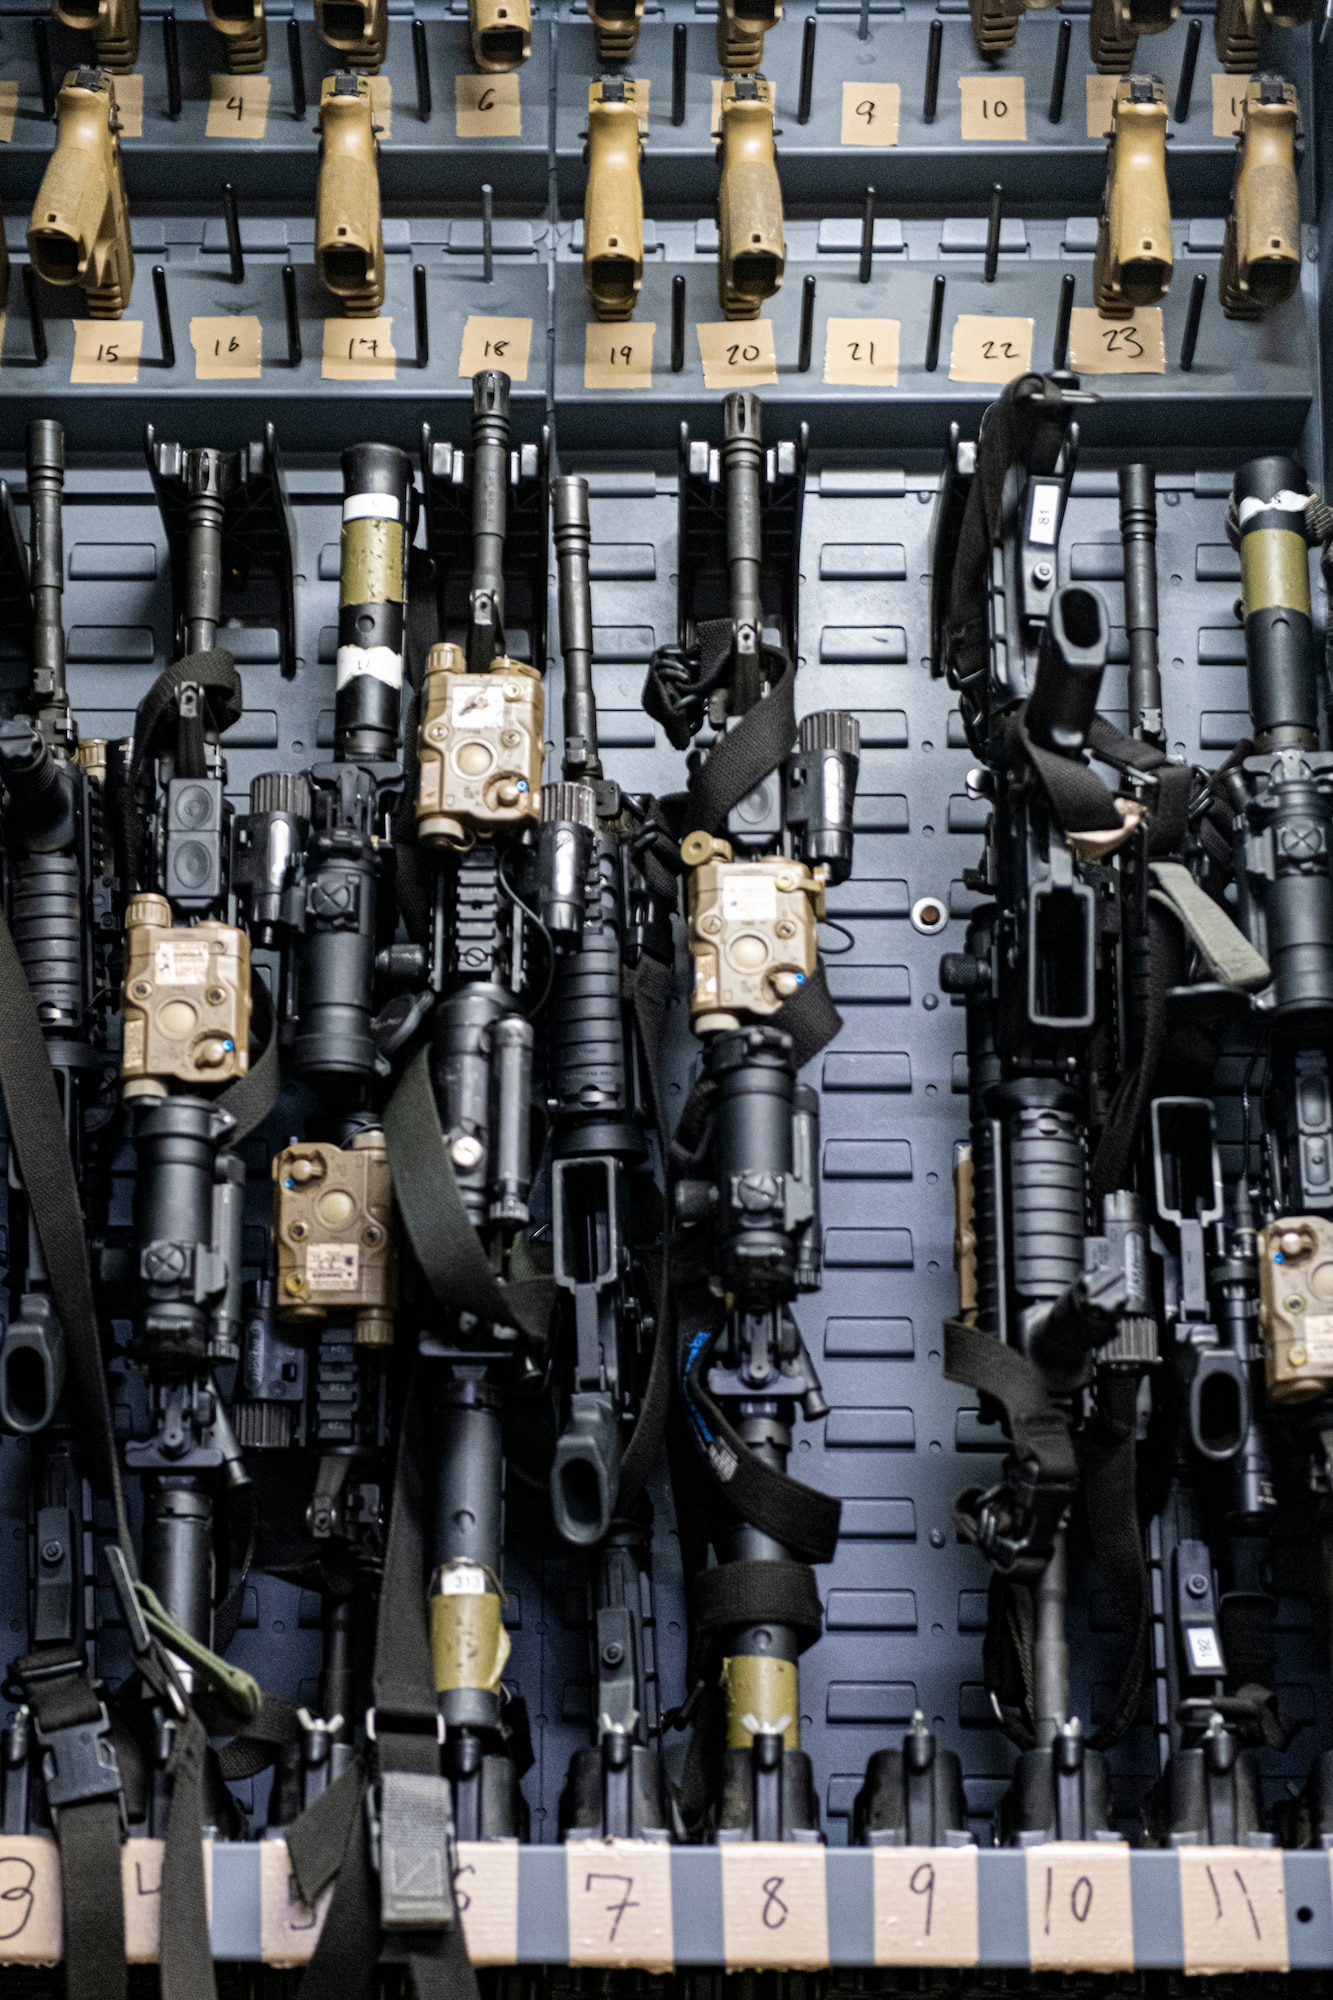 Photo of firearms in a locker